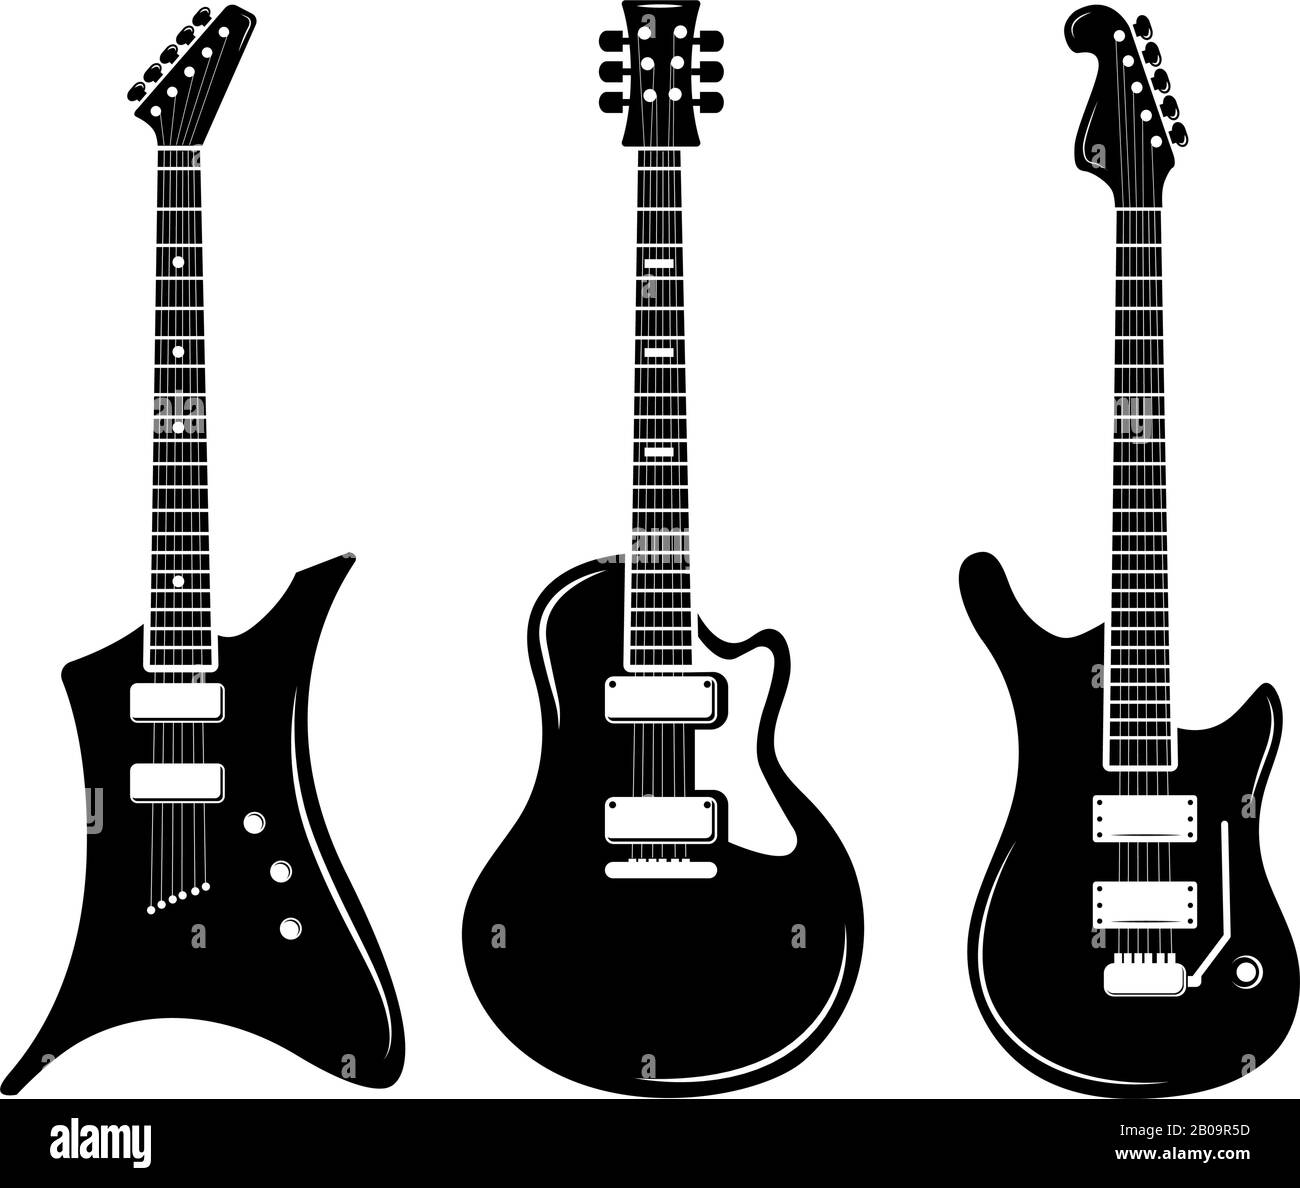 Iconos de guitarra negra vectorial guitarras acústicas y eléctricas. Instrumento de guitarra musical para tocar rock, ilustración de guitarra eléctrica de silueta negra Ilustración del Vector